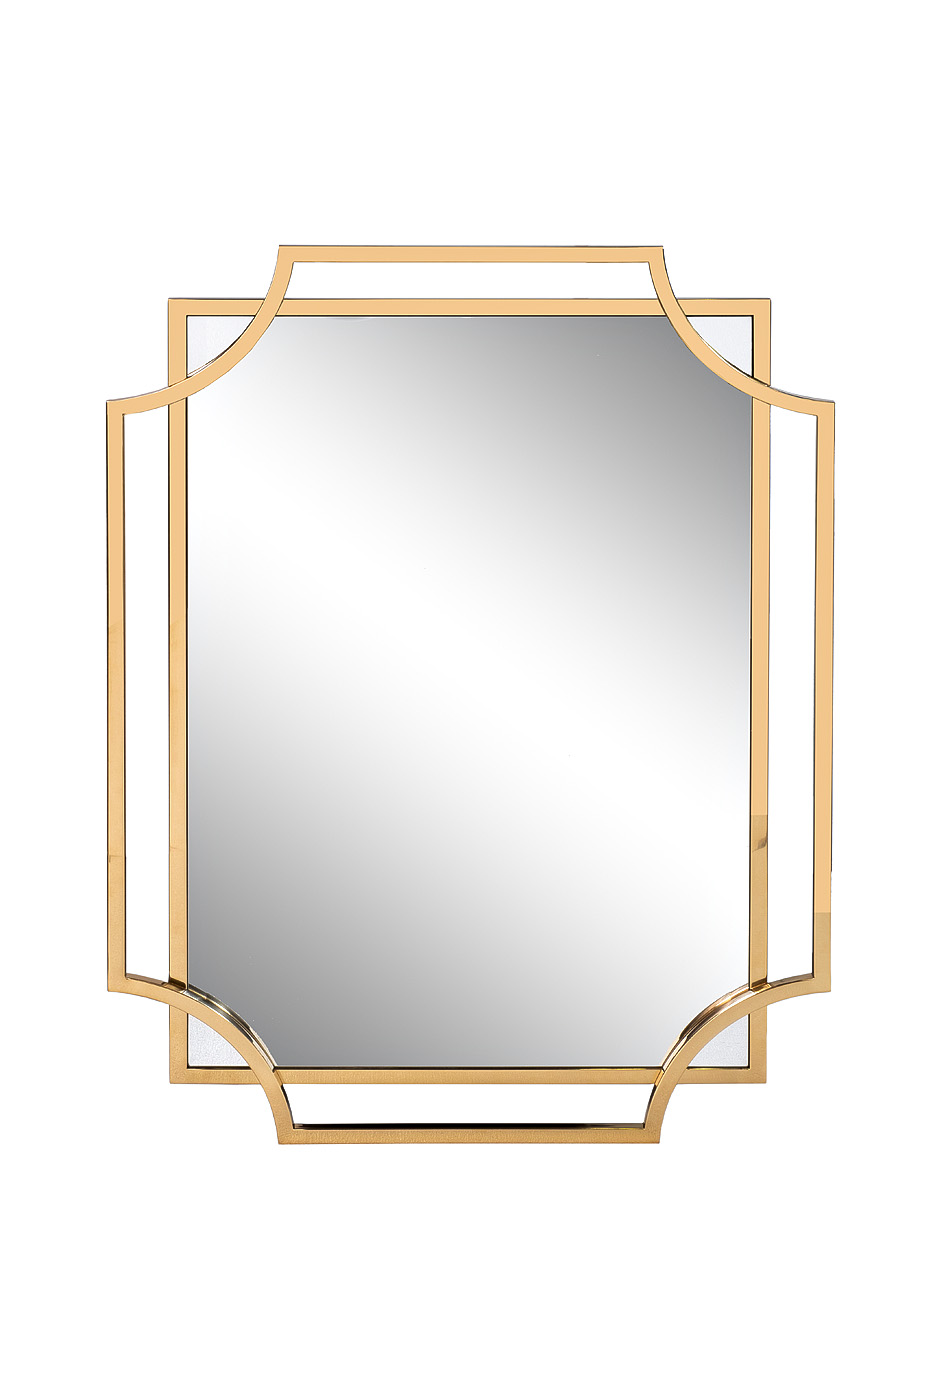 Зеркало прямоугольное в раме цвет золото